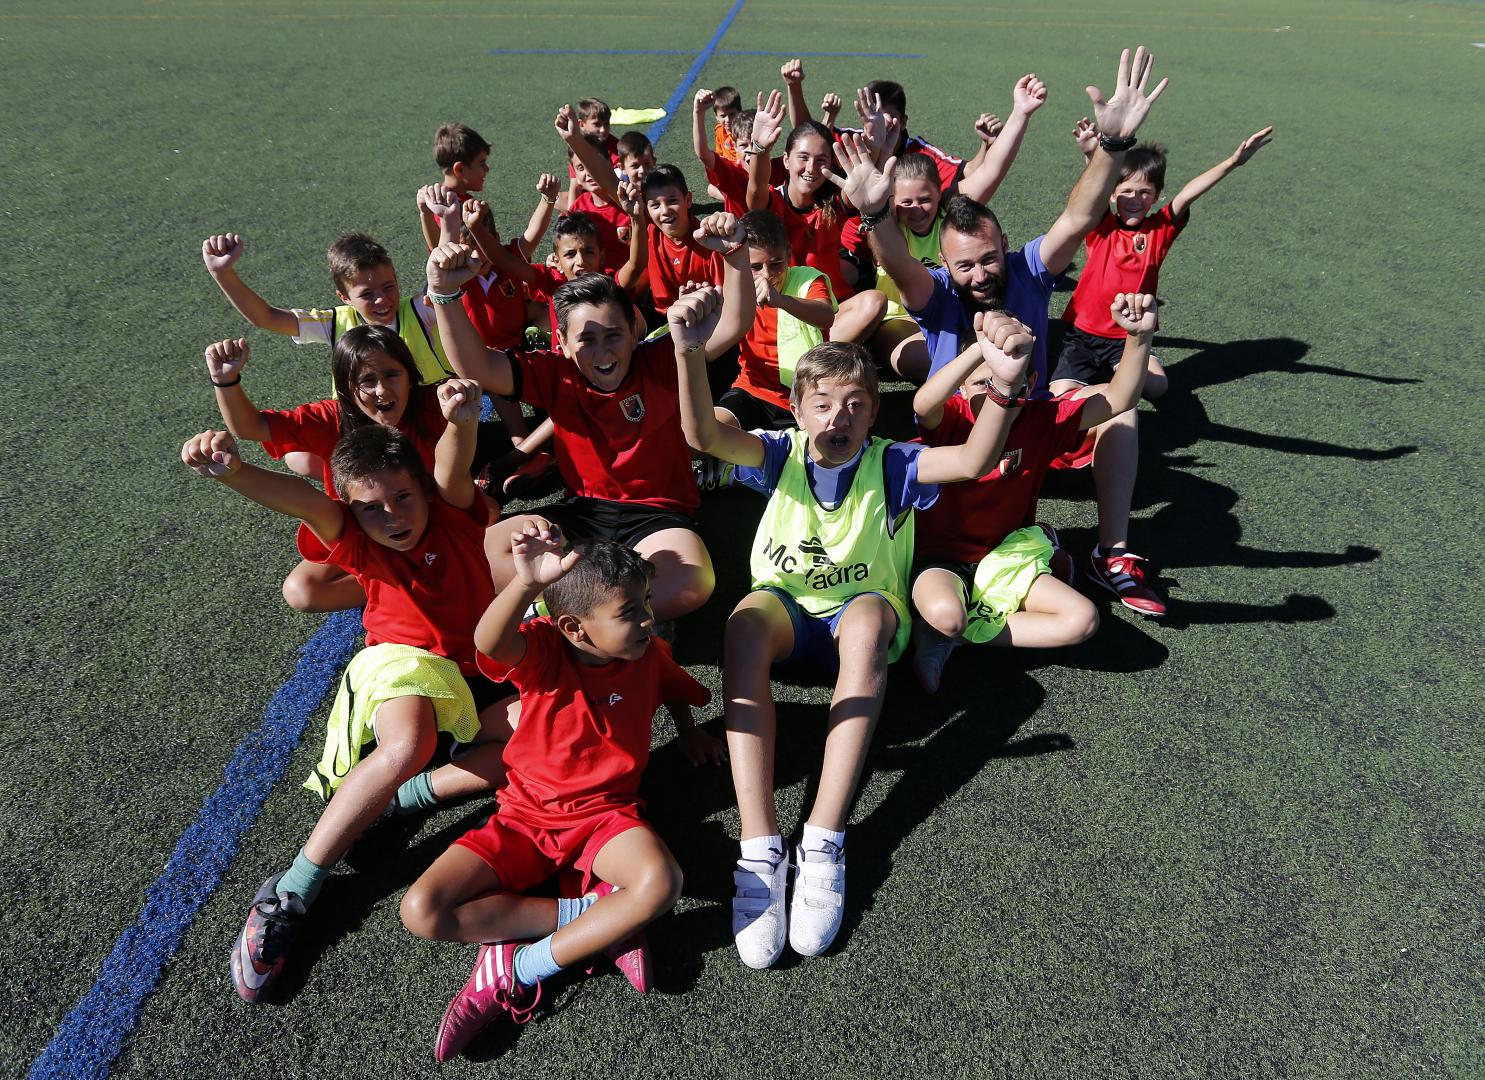 Escuela de fútbol Racing Club Villalbés - Escuelas de Fútbol